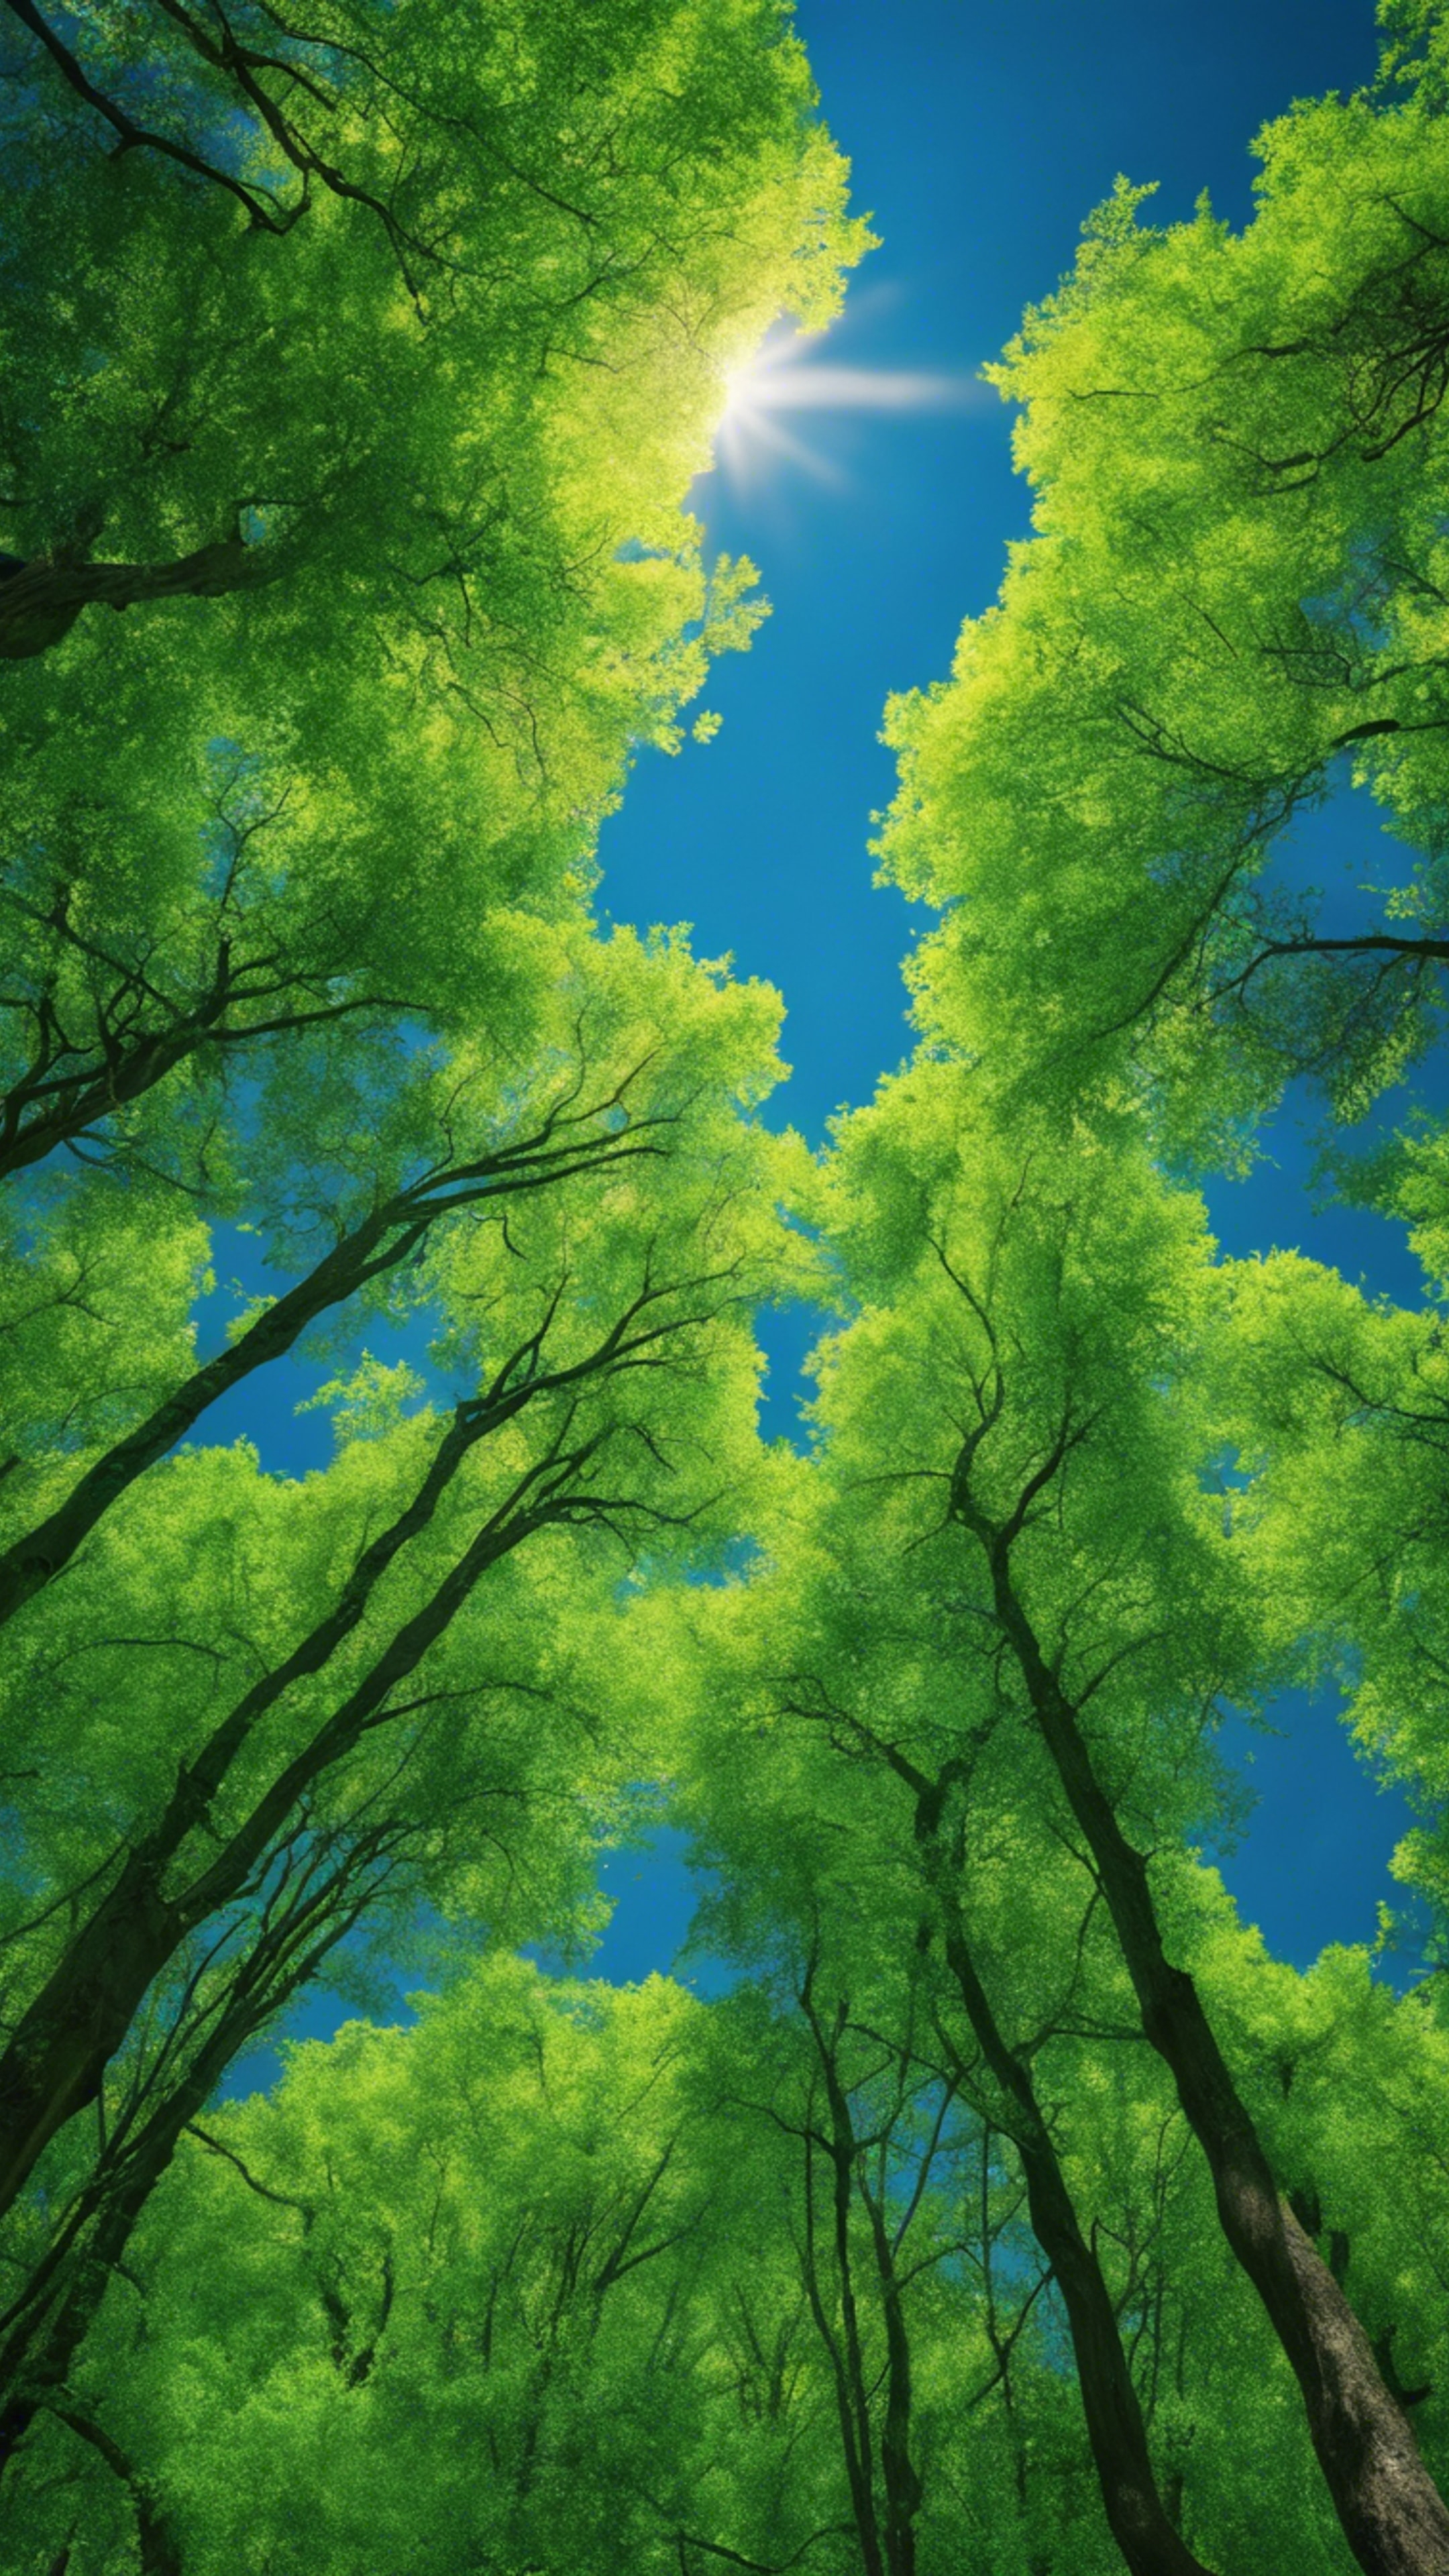 A vibrant green forest under a deep blue sky. Behang[dfb81149561043a7a18e]